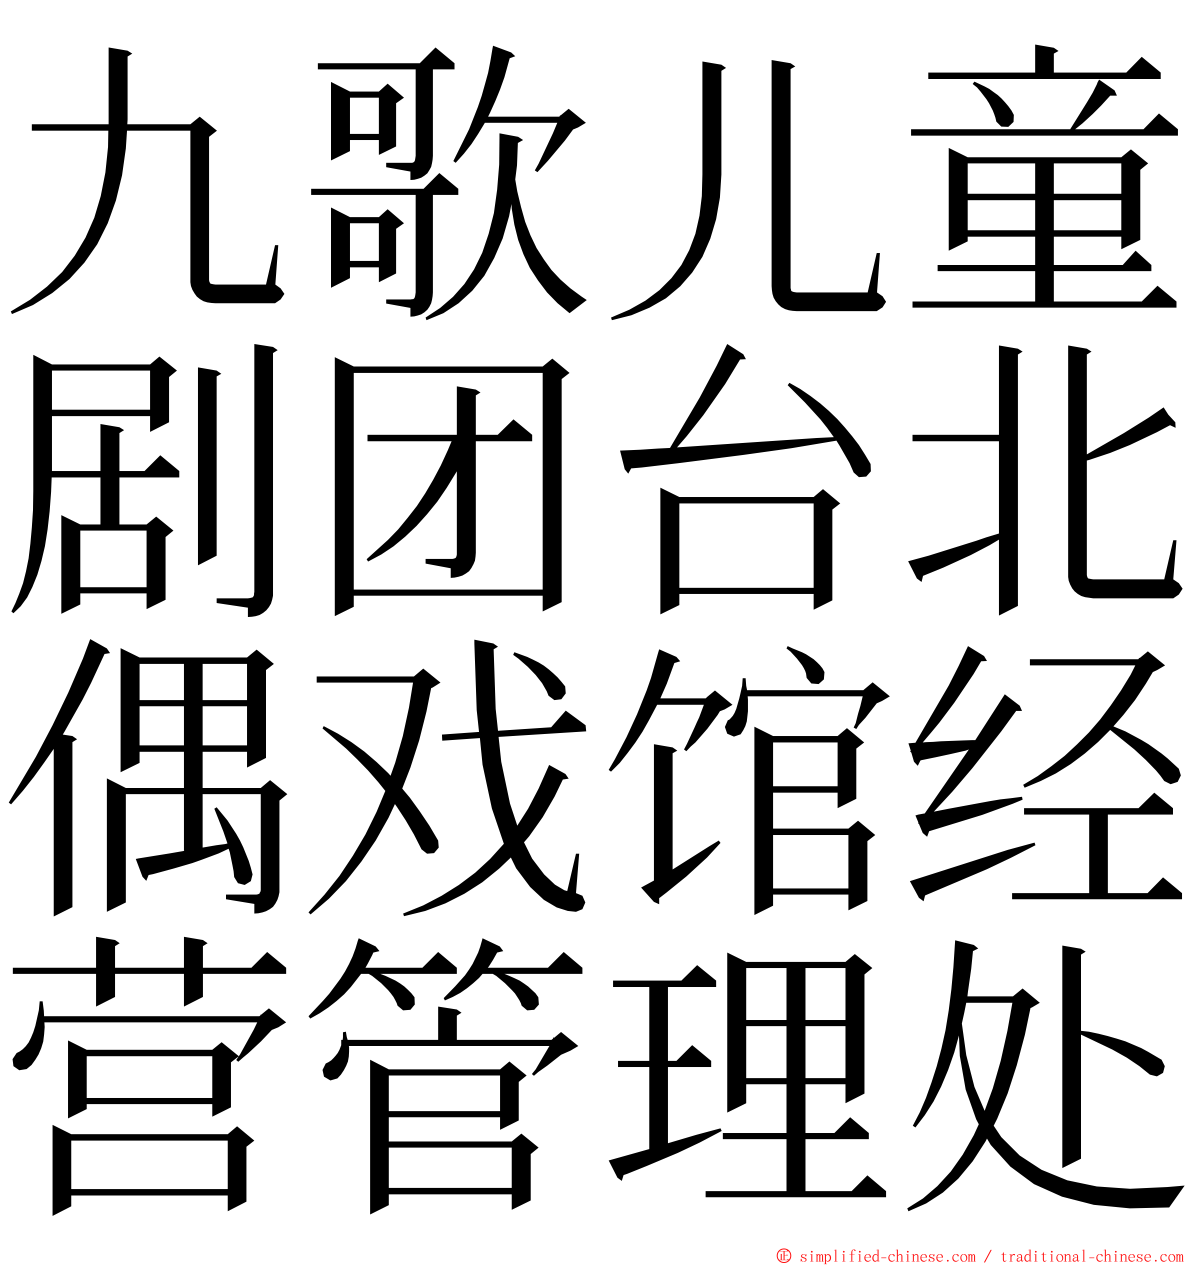 九歌儿童剧团台北偶戏馆经营管理处 ming font